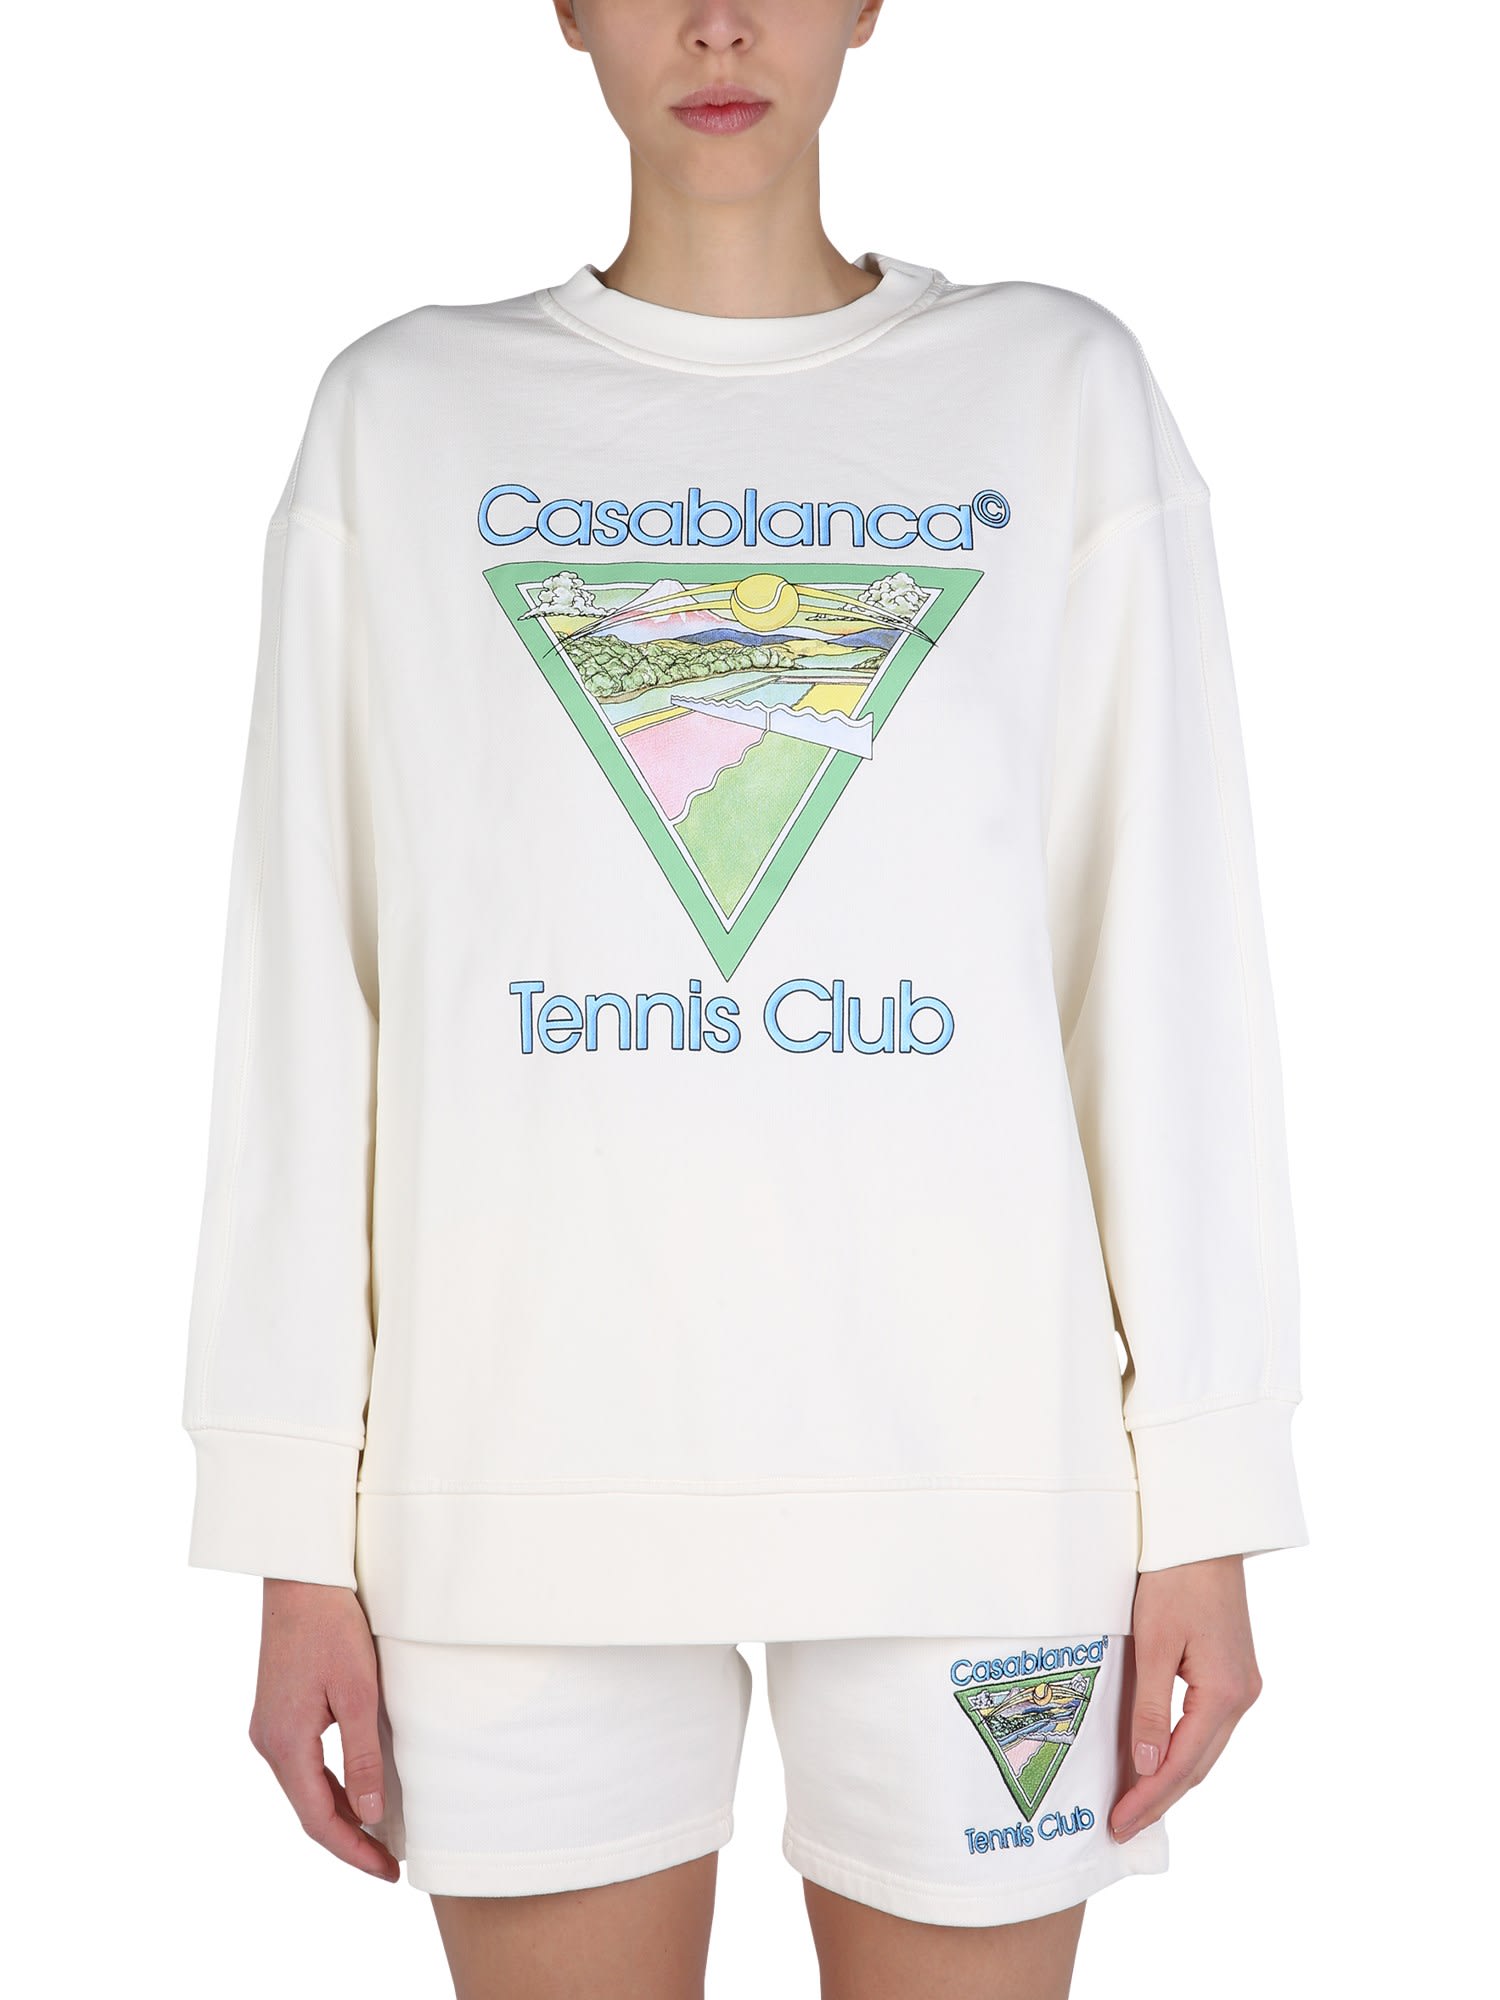 Casablanca Tennis Club Crew Neck Sweatshirt